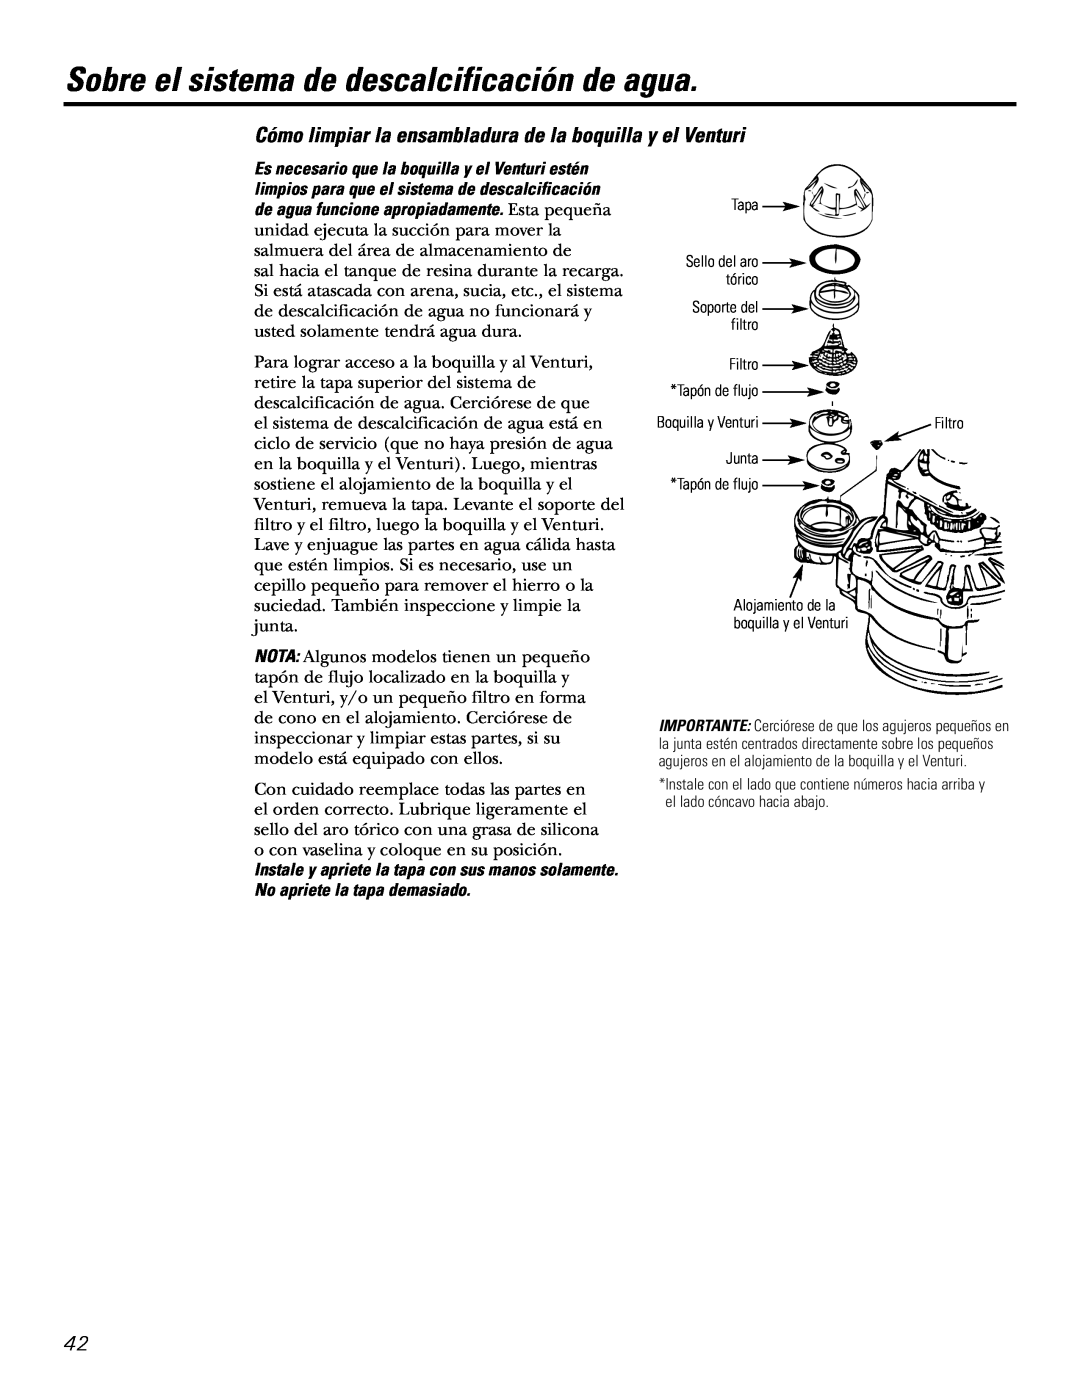 GE GXSF27E Sobre el sistema de descalcificación de agua, Tapa Sello del aro tórico Soporte del filtro, Boquilla y Venturi 